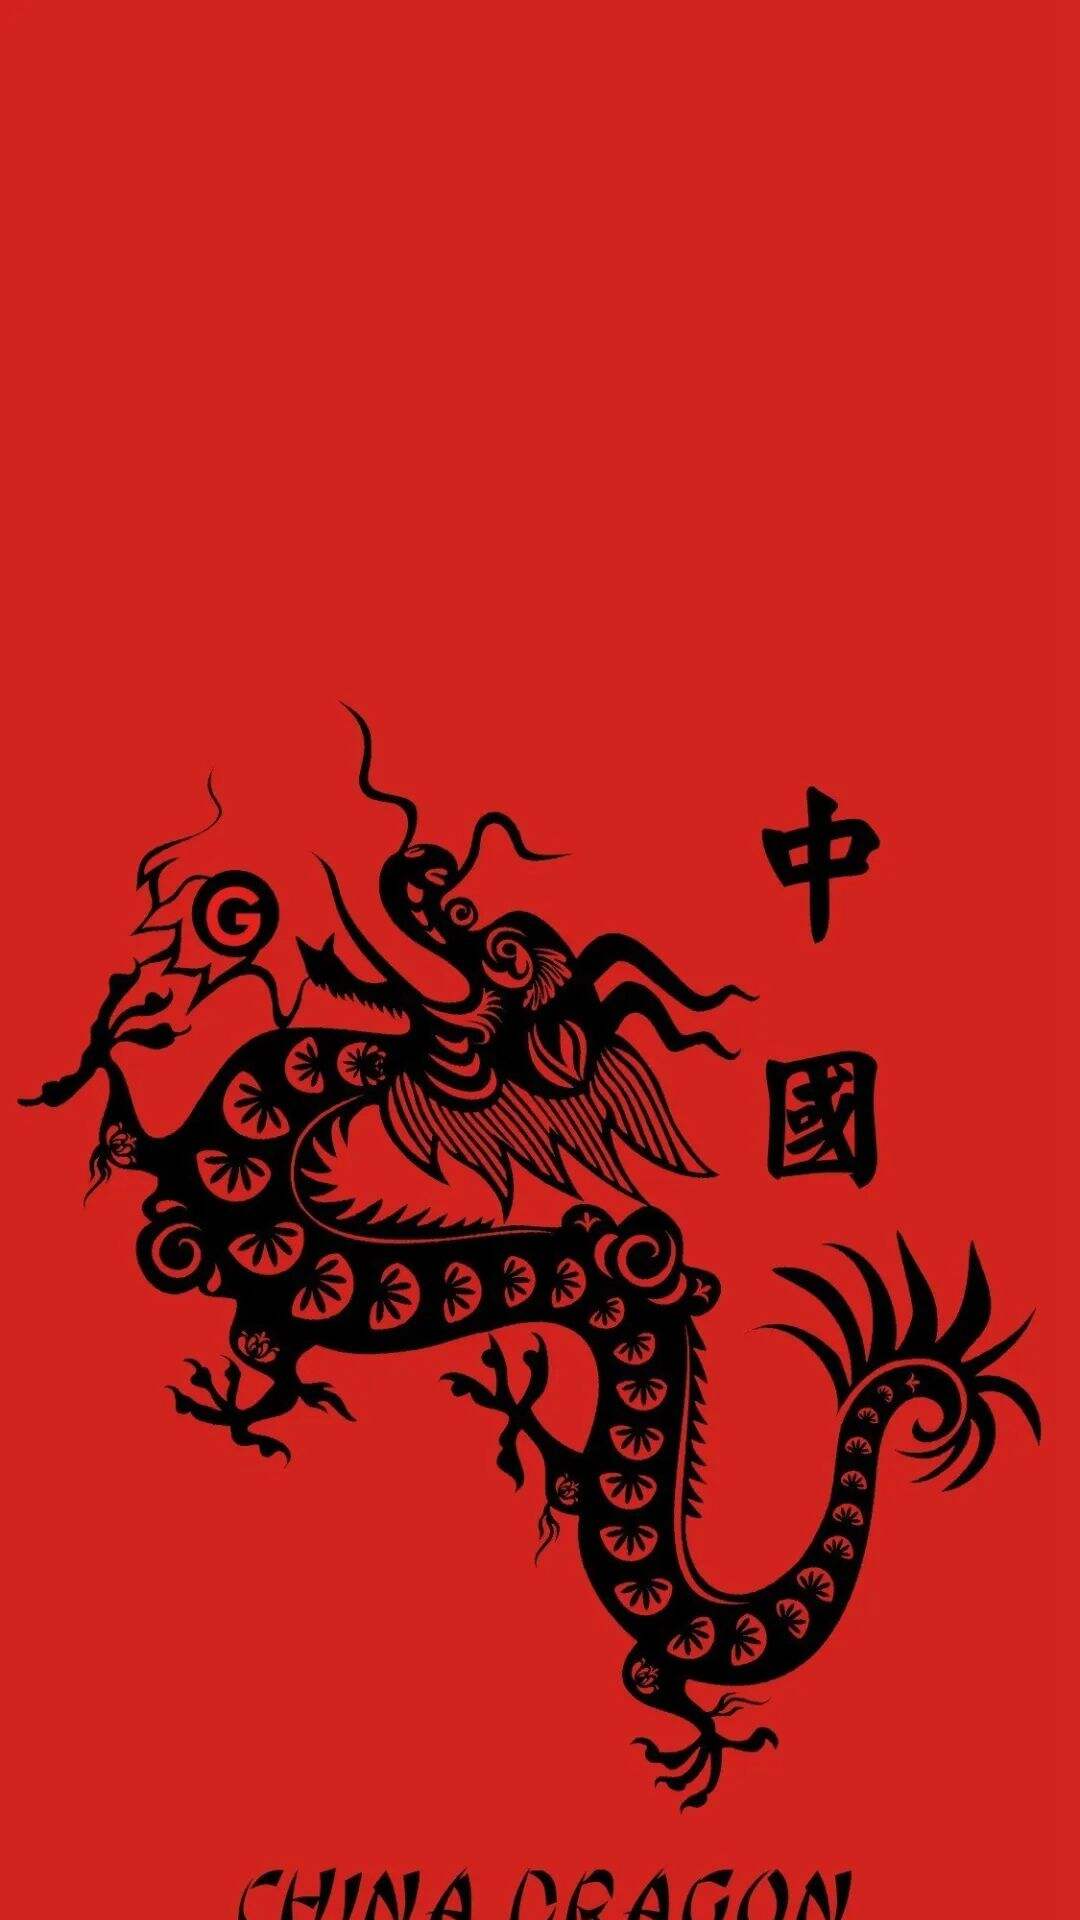 中国龙 中国风 红色背景 手机壁纸图片